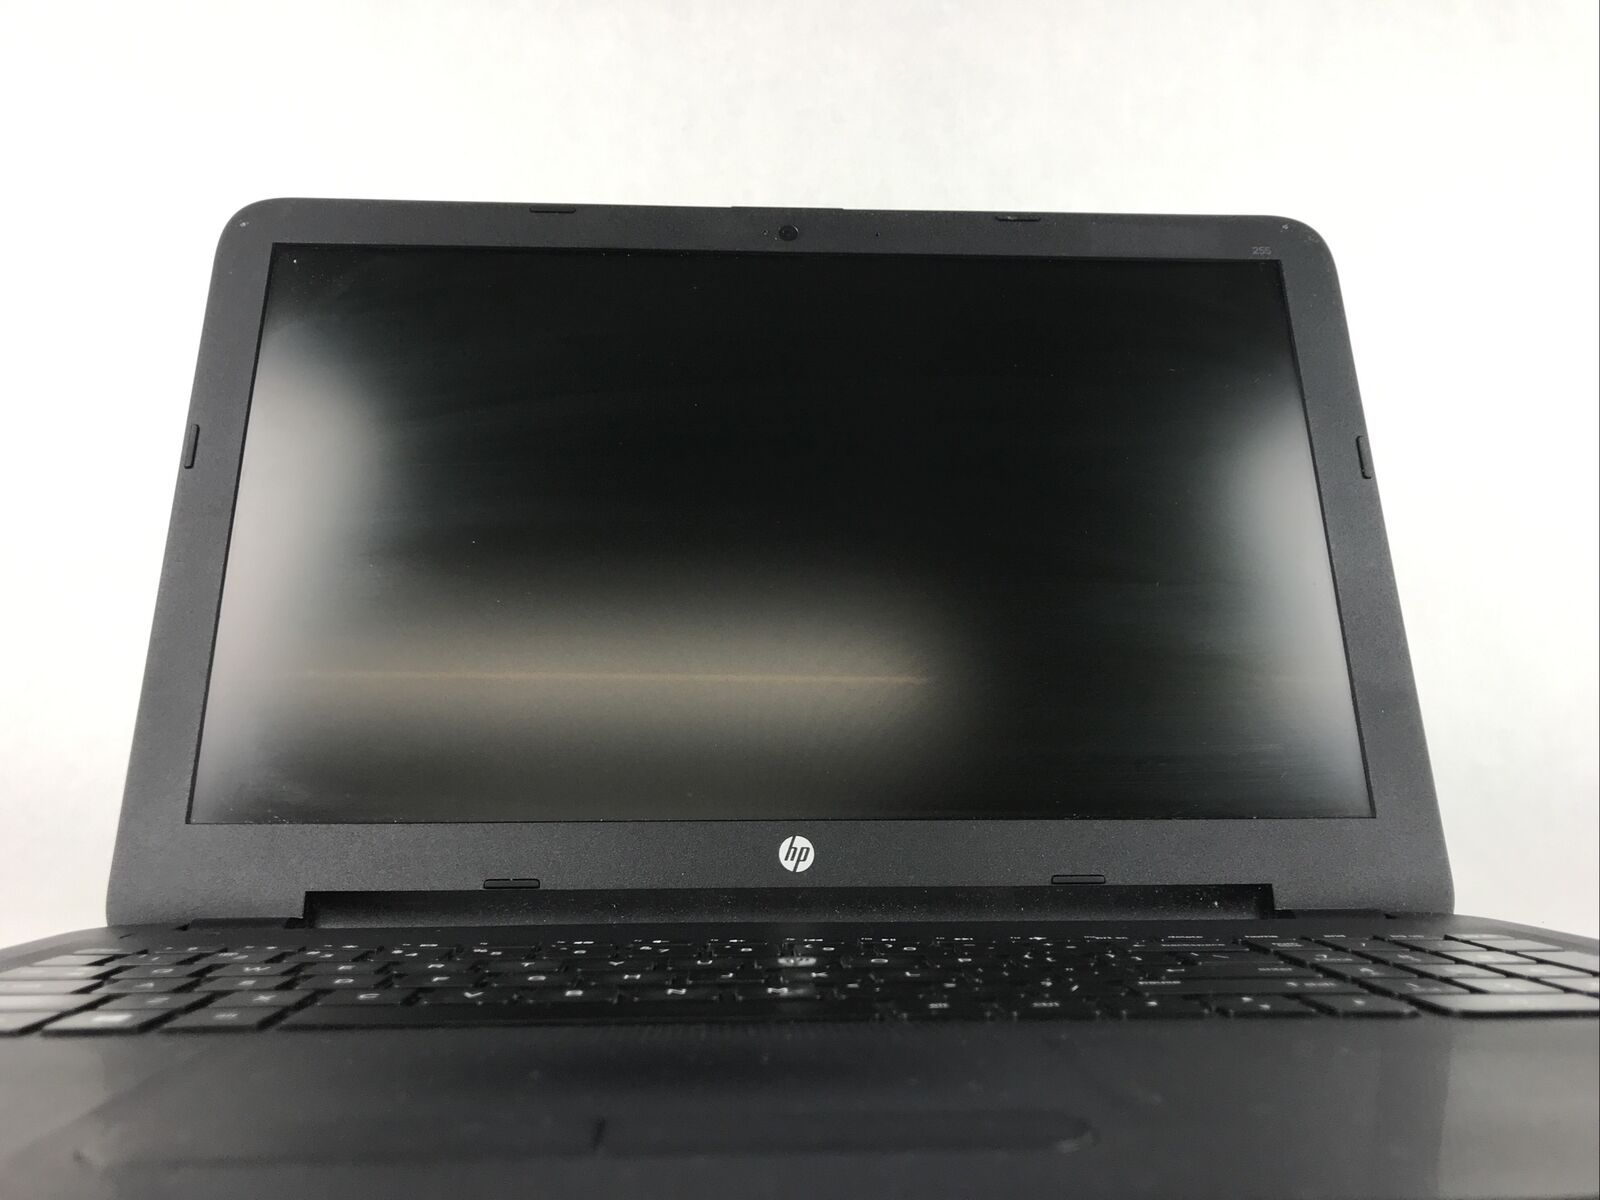 HP 255 G4 Notebook 15.6" - AMD A6-6310 @1.8GHz - 4GB RAM NO HDD NO OS NO BATTERY